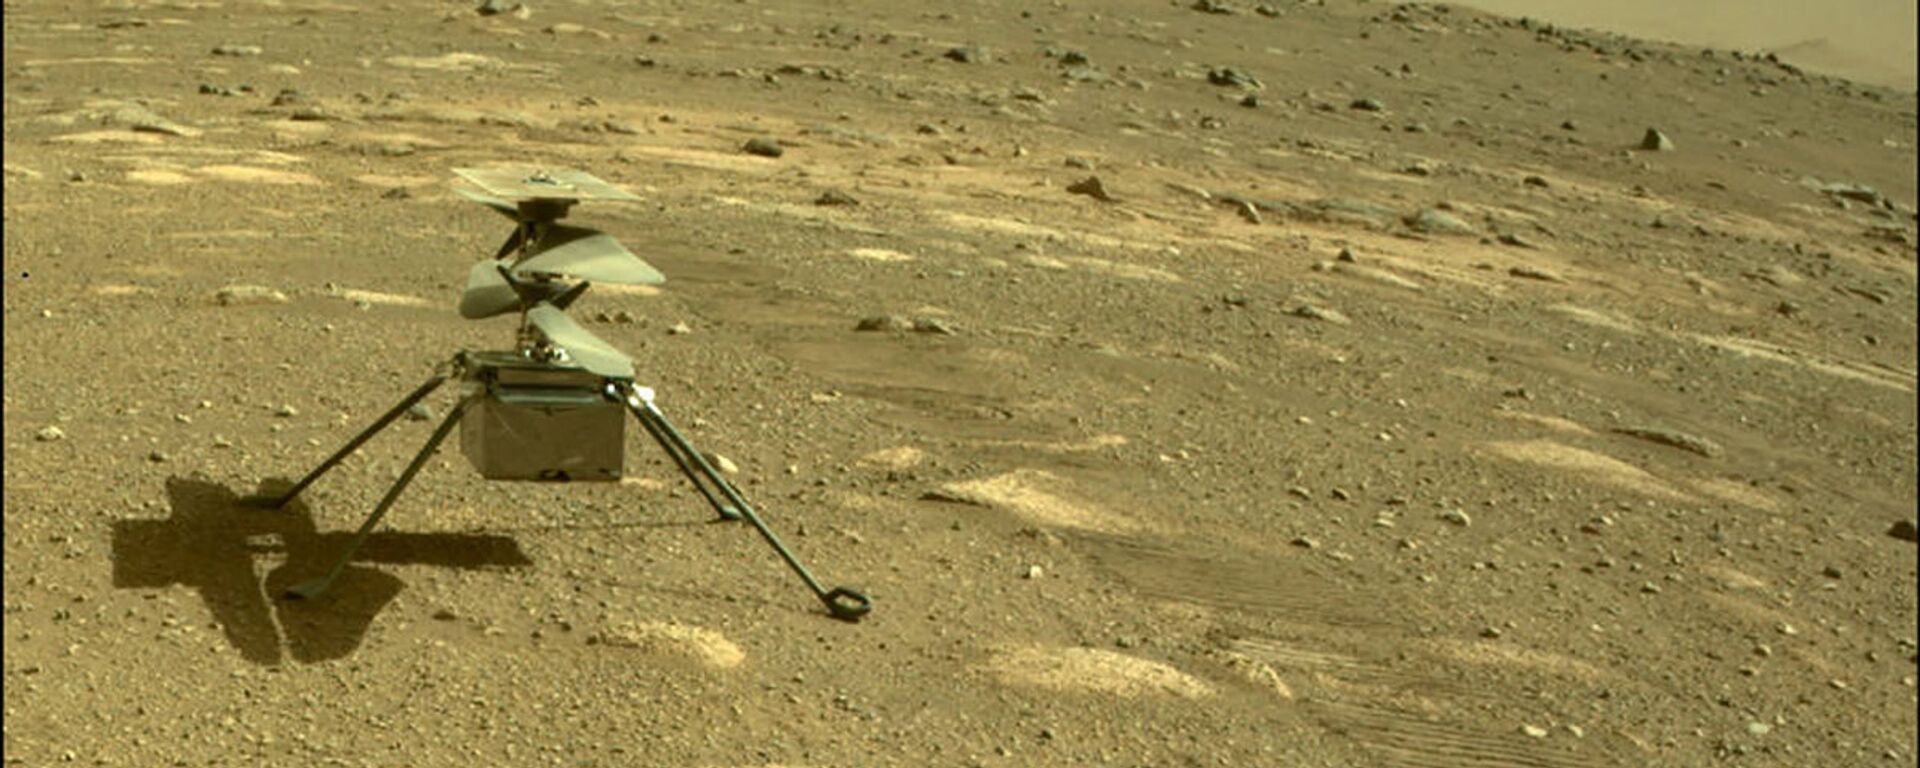 بالگرد Ingenuity ناسا در مریخ - اسپوتنیک ایران  , 1920, 06.04.2021